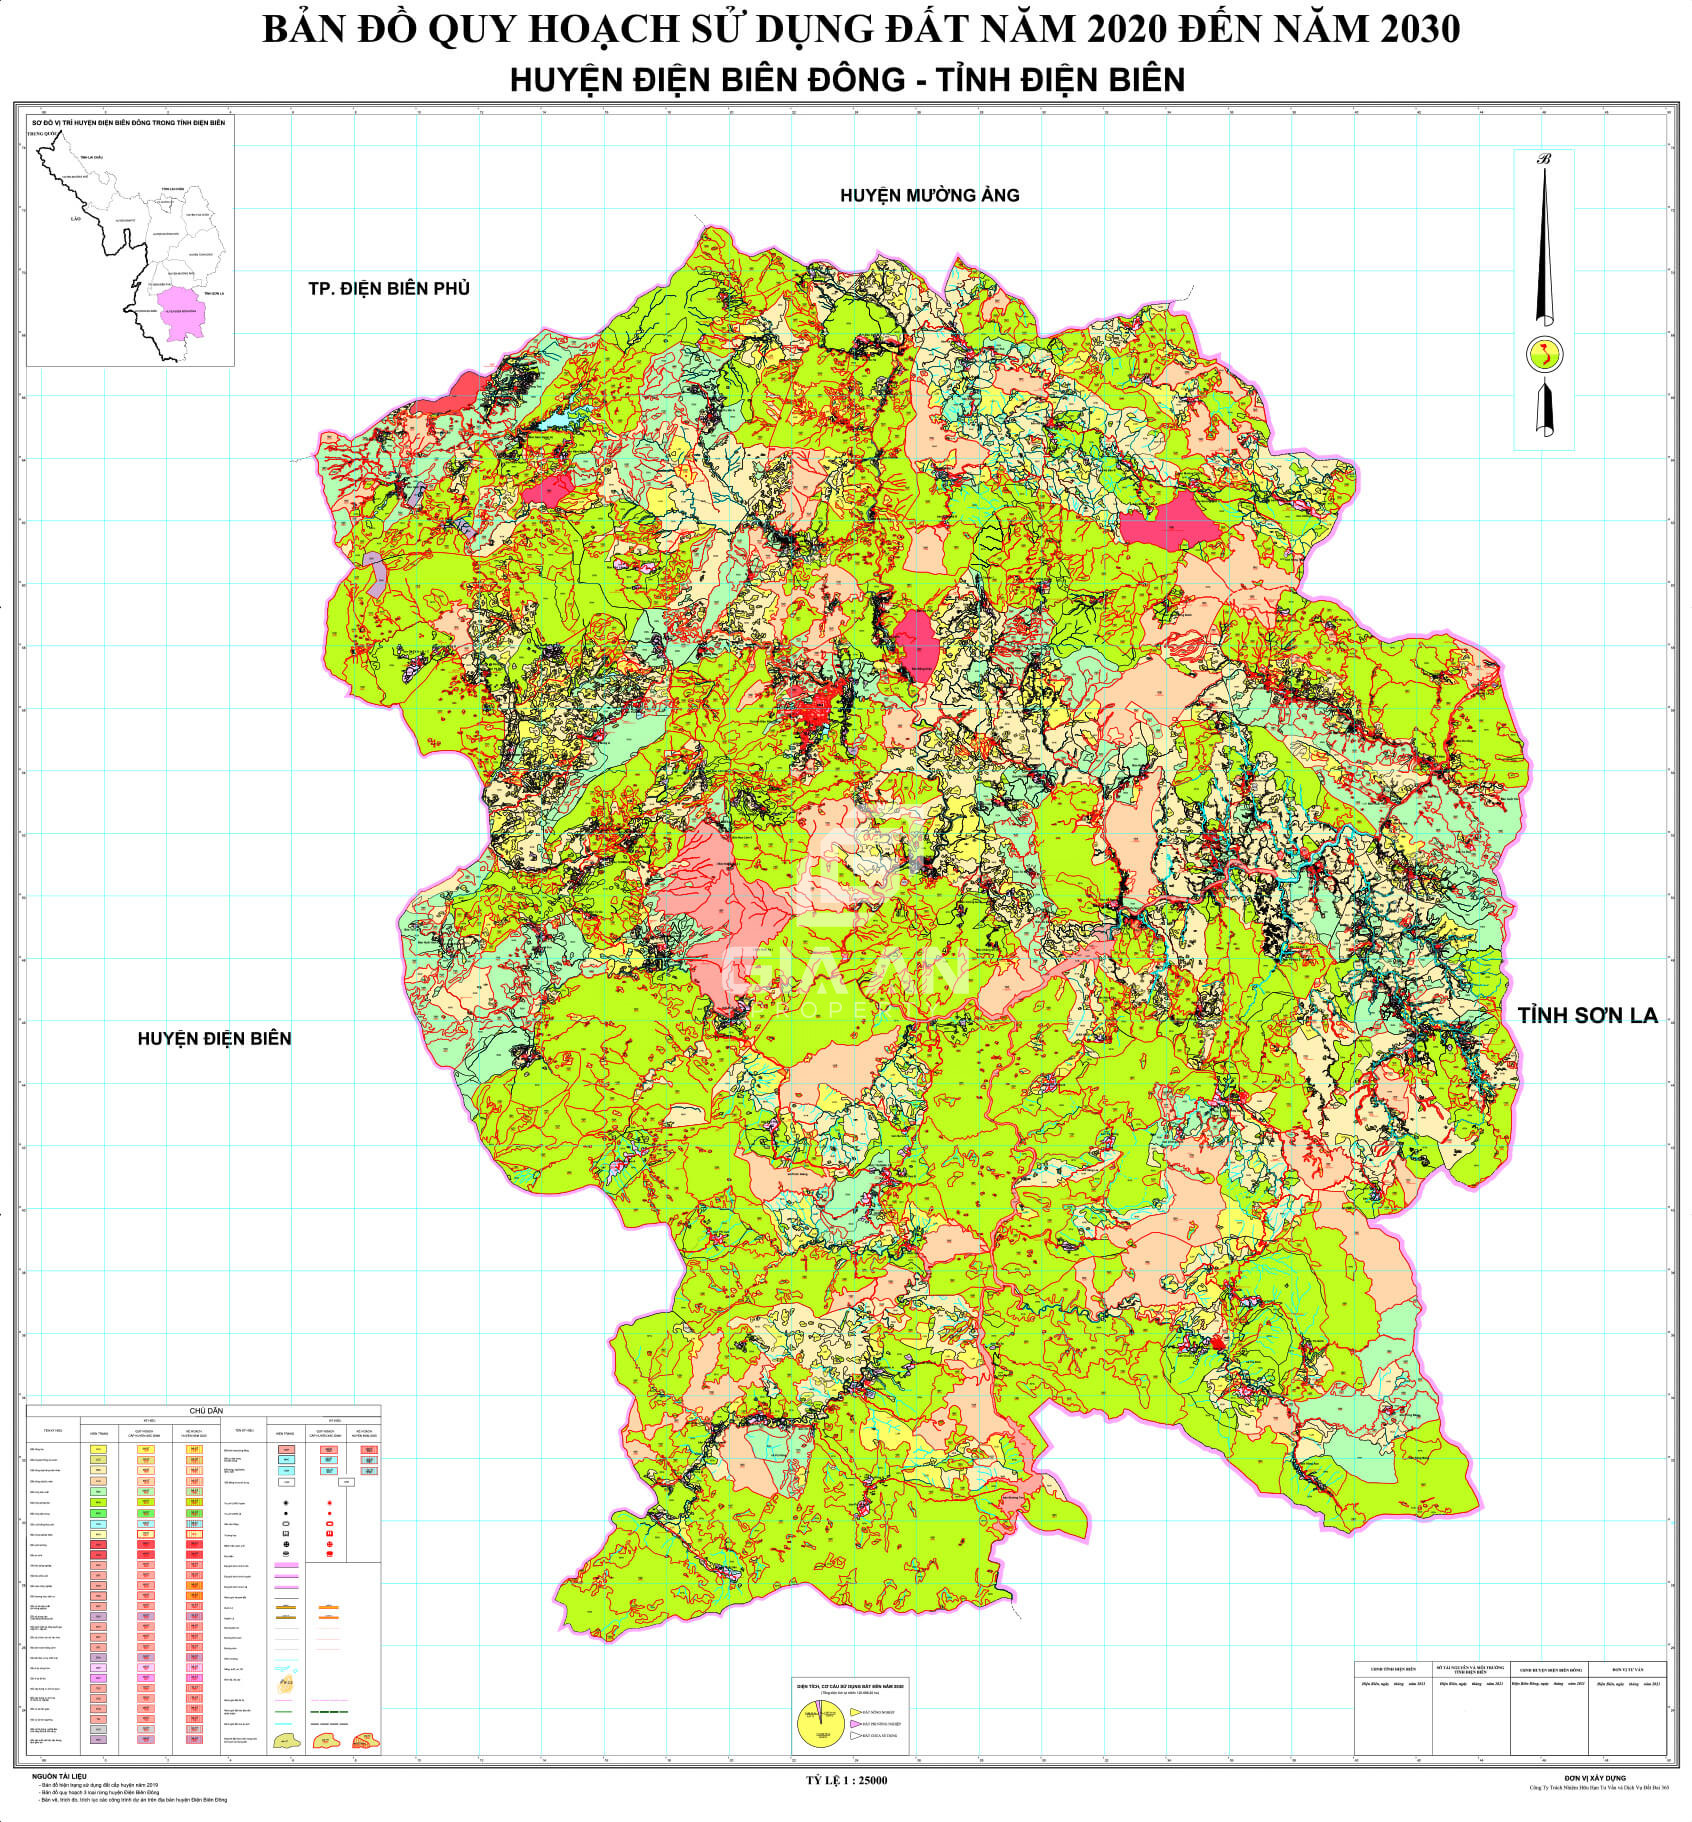  Bản đồ quy hoạch sử dụng đất huyện Điện Biên Đông (tỉnh Điện Biên) cập nhật 2021